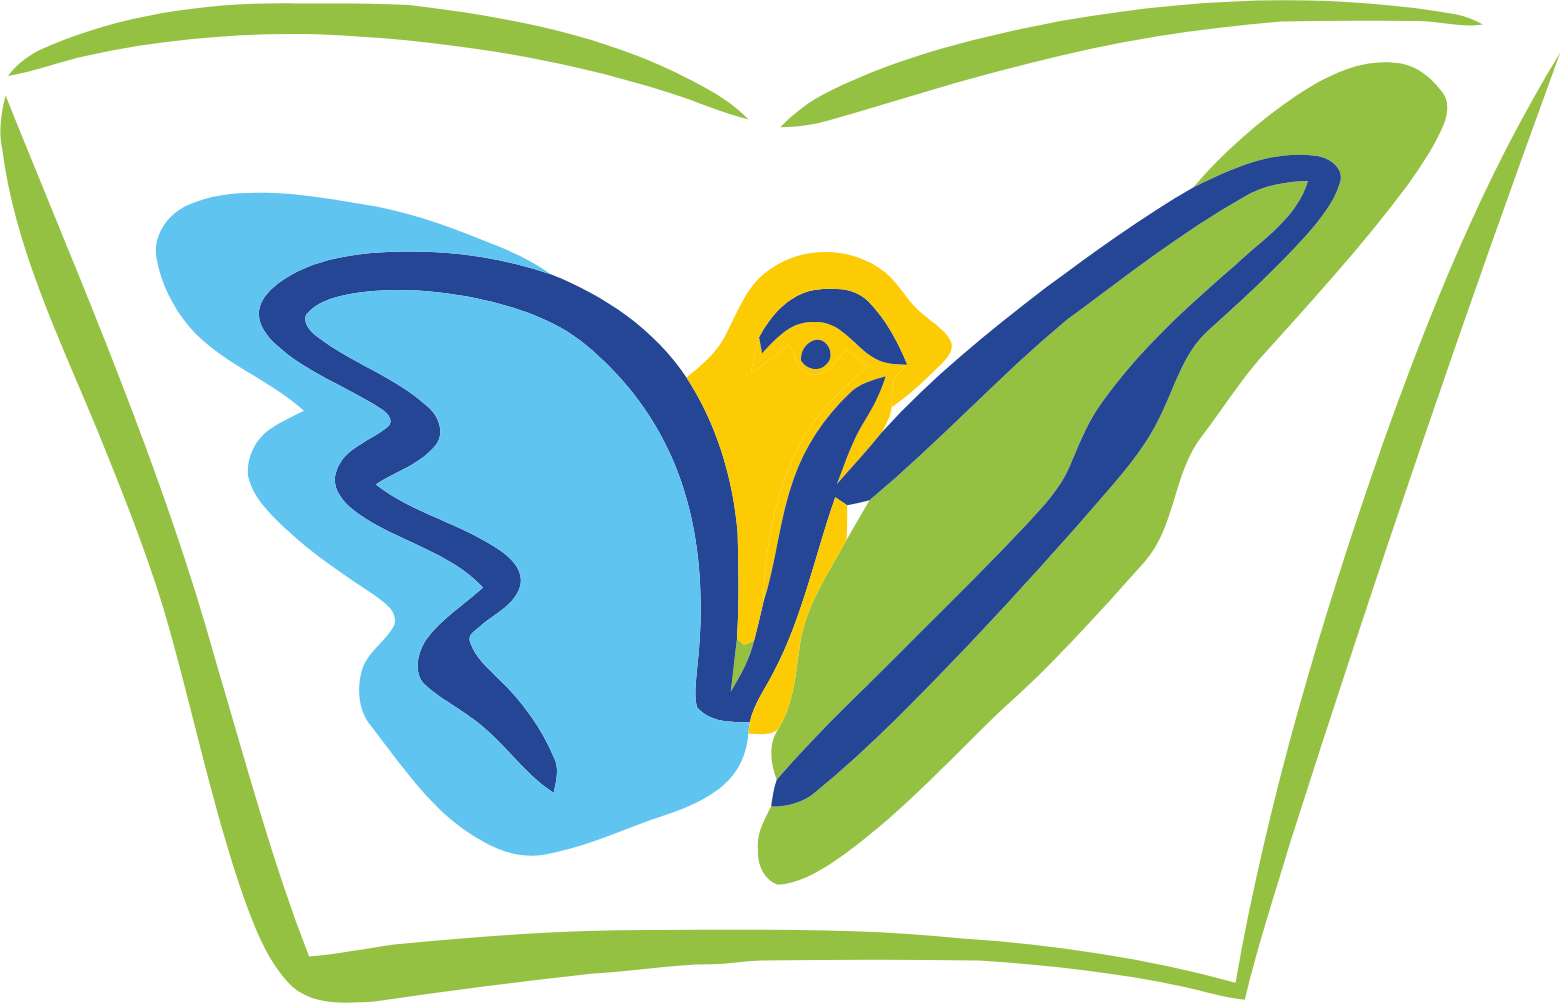 Jubilant Pharmova logo (transparent PNG)